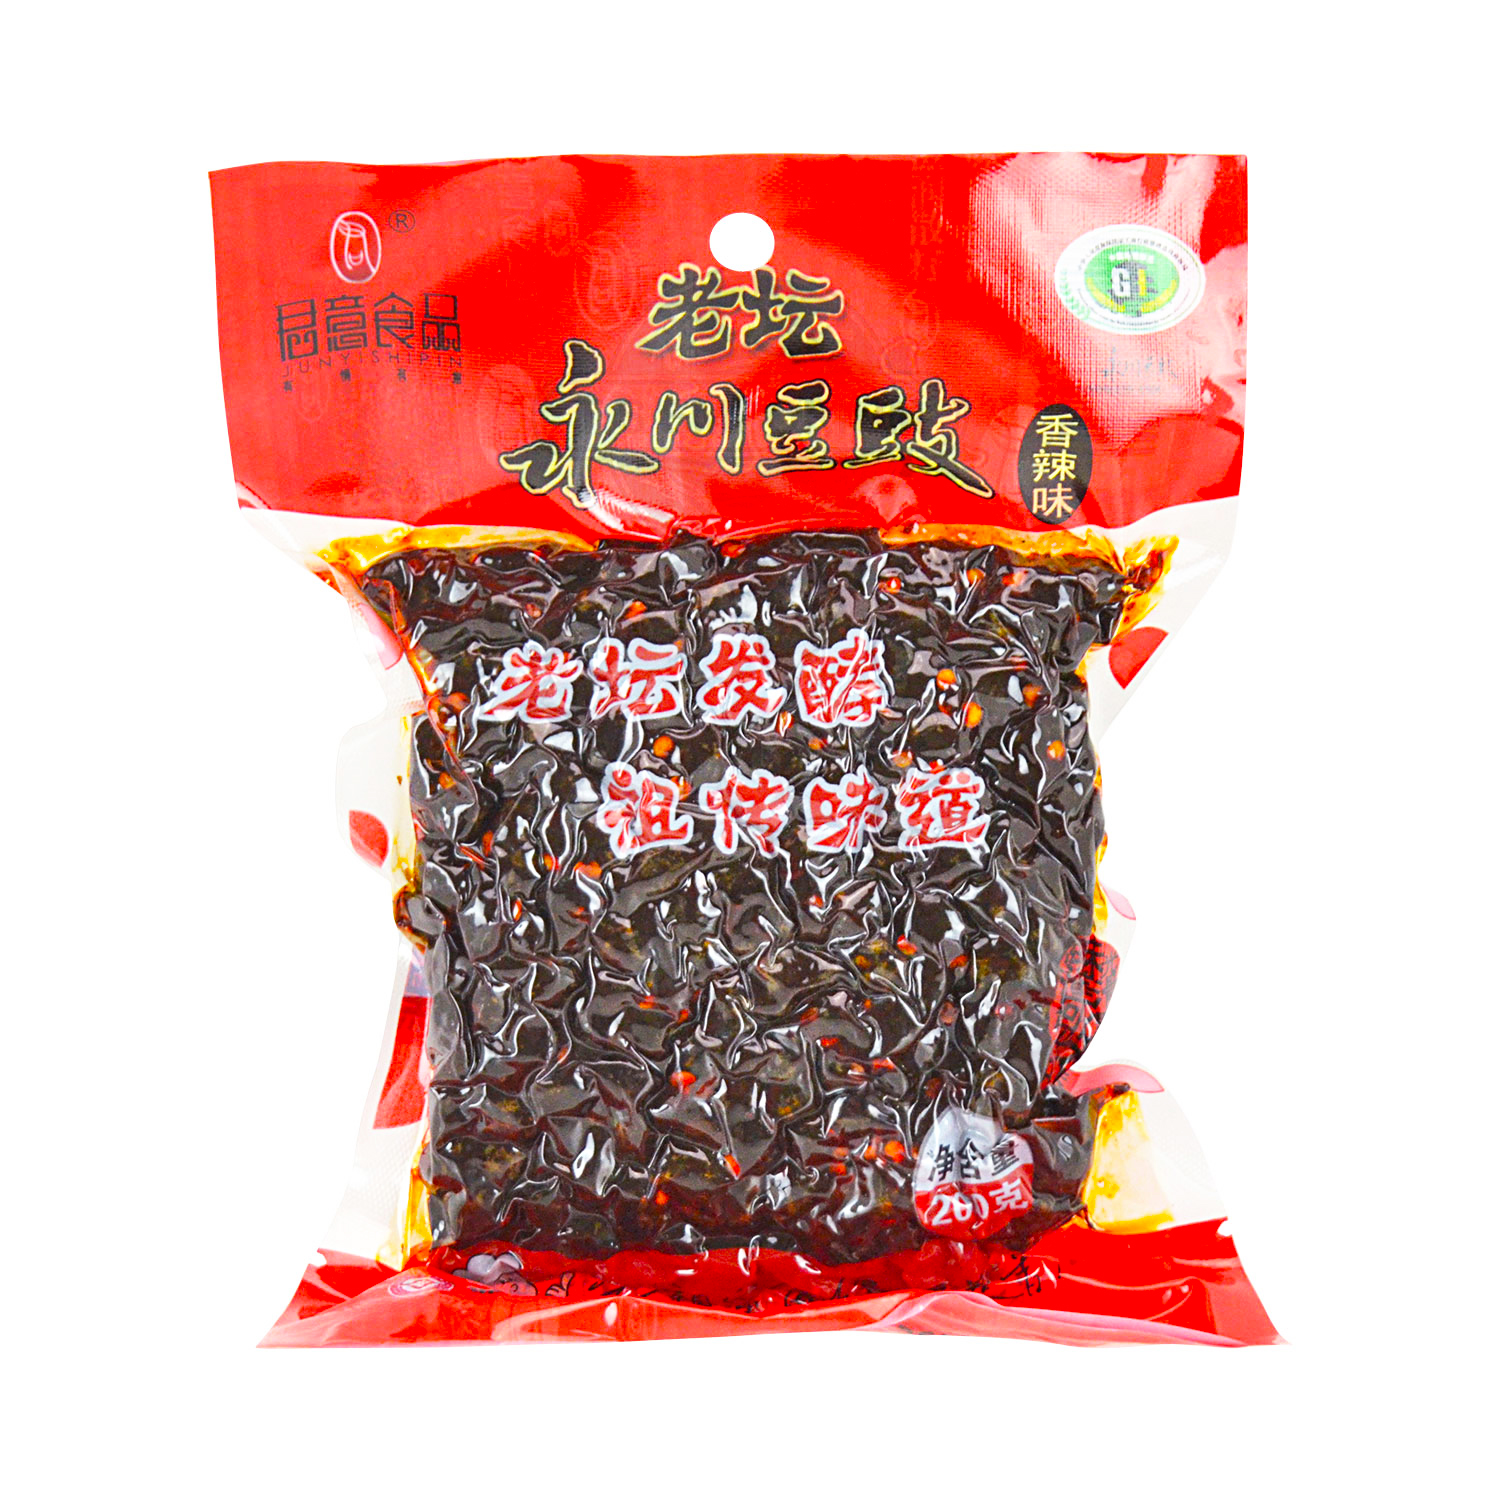 重庆 永川豆豉 | Chongqing Preserved Black Bean 150g - HappyGo Asian Market